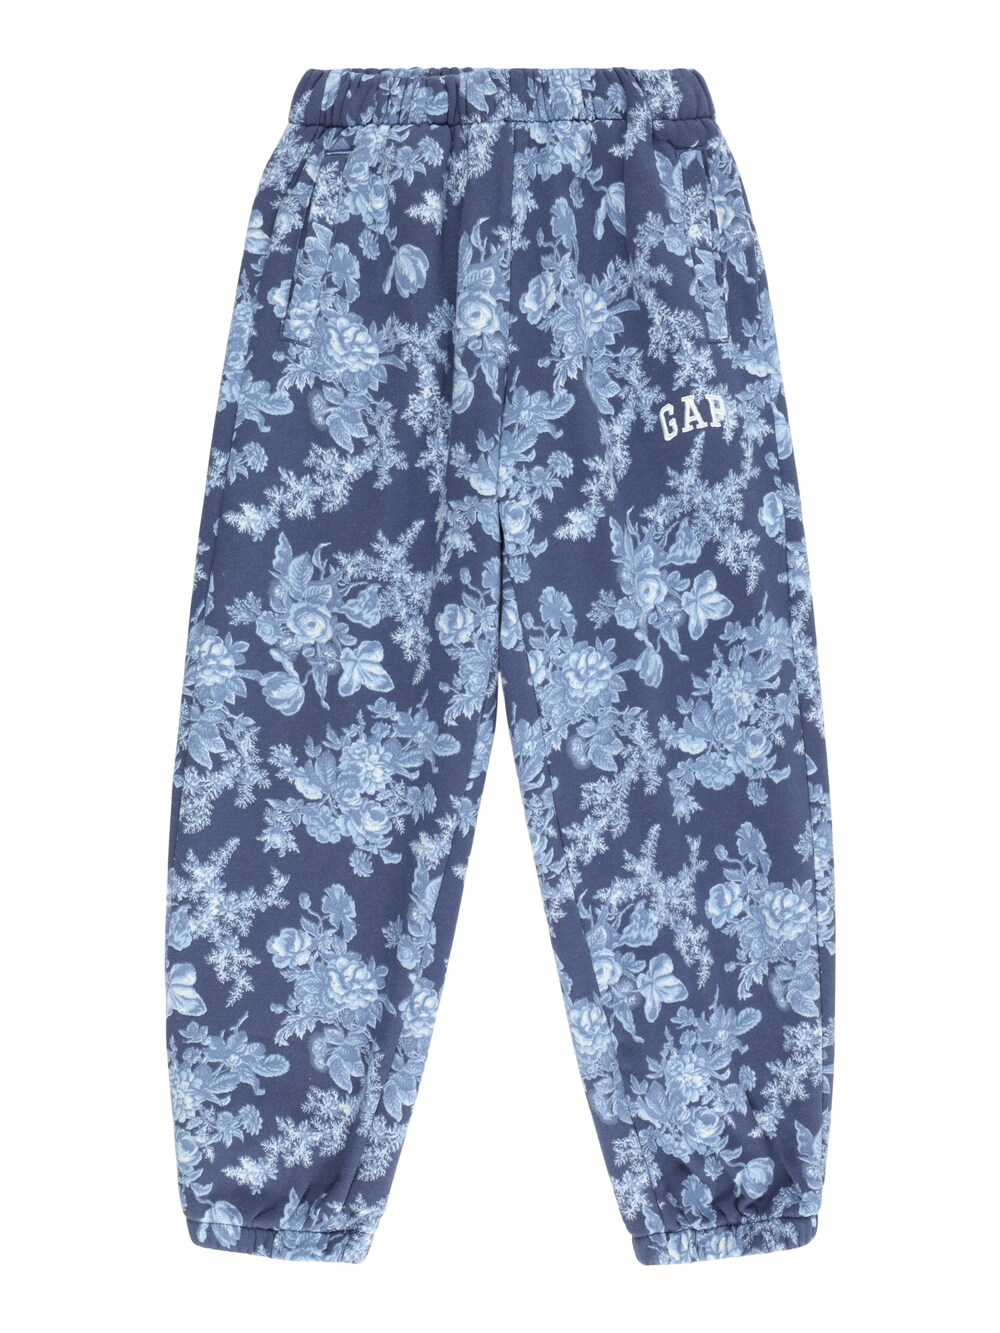 Зауженные брюки Gap, дымчато-синий/ночной синий/пыльно-синий